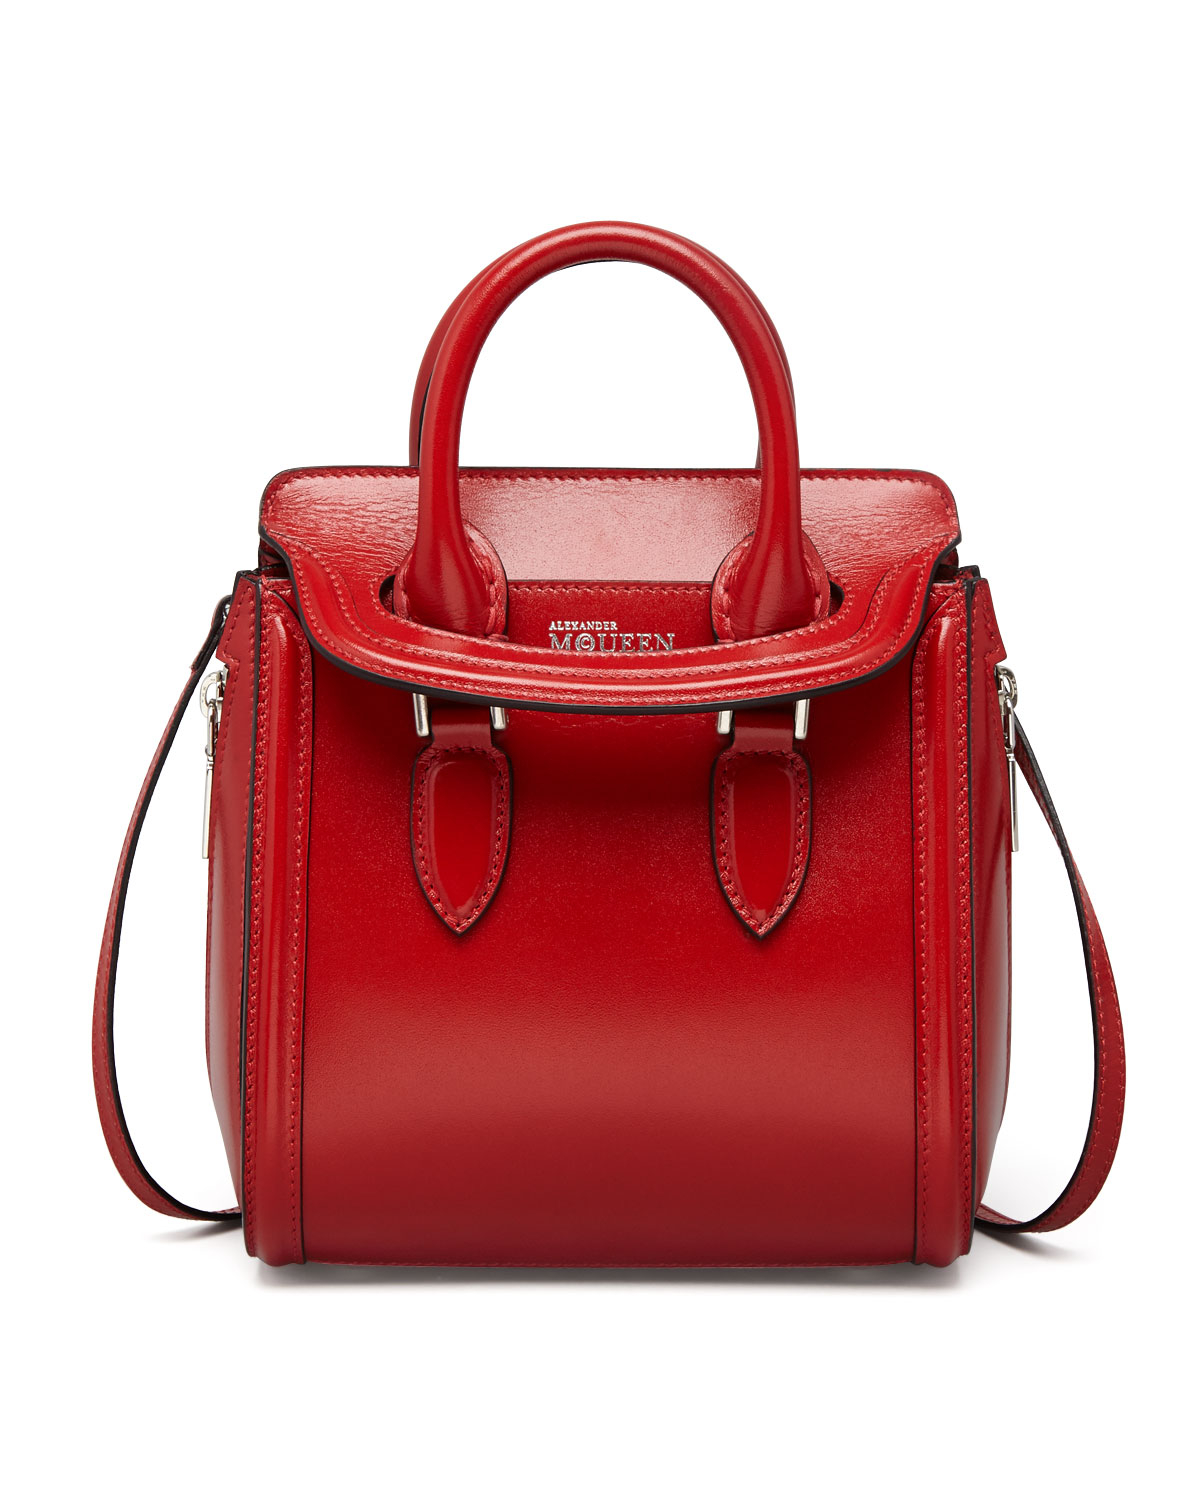 Red Satchel Bag | Bags More